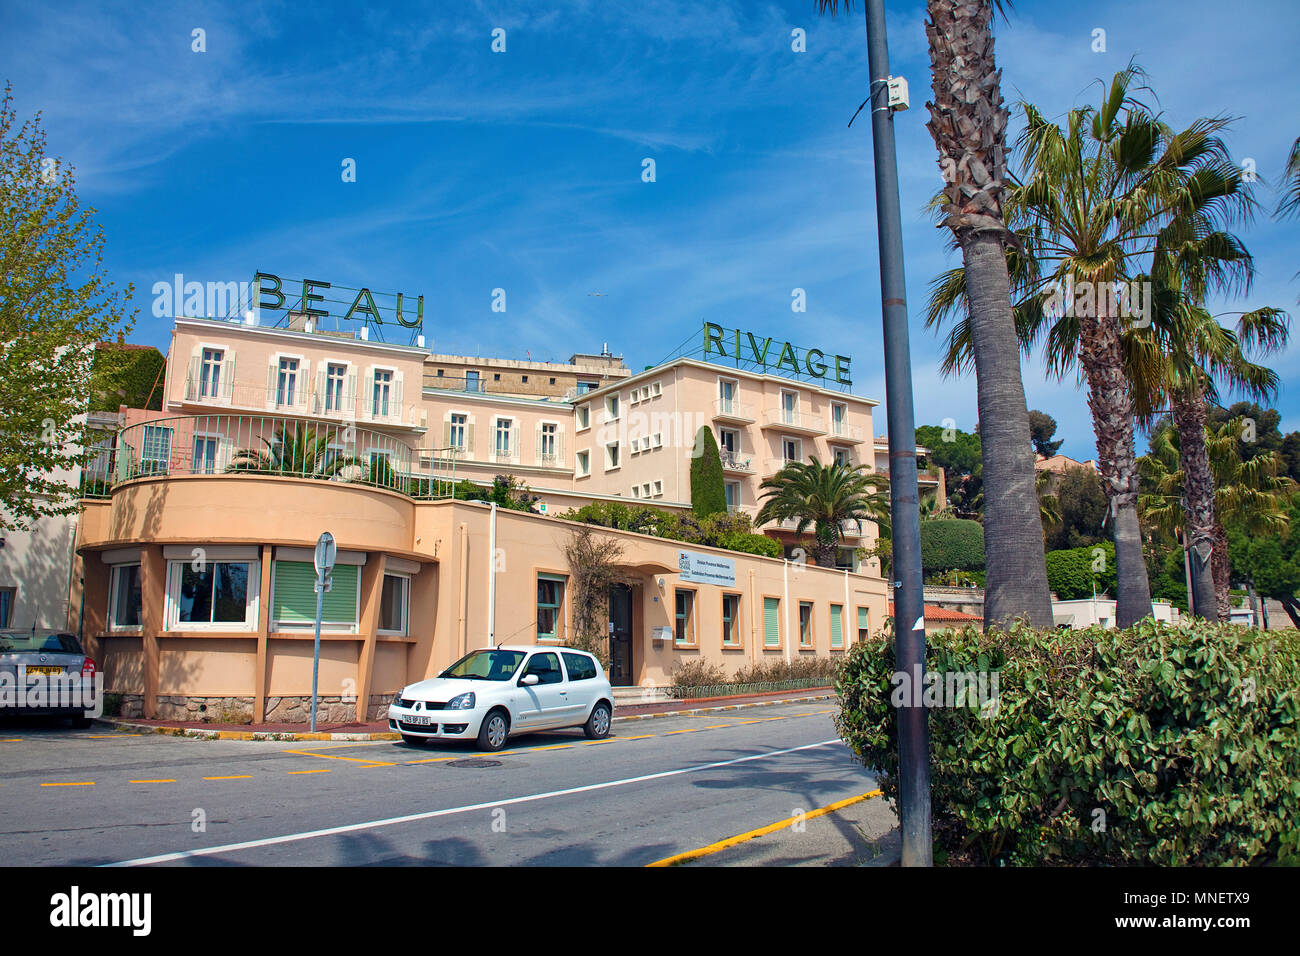 Hotel Beau Rivage at Bandol, Cote d'Azur, Département Var, Provence-Alpes-Côte d’Azur, South France, France, Europe Stock Photo